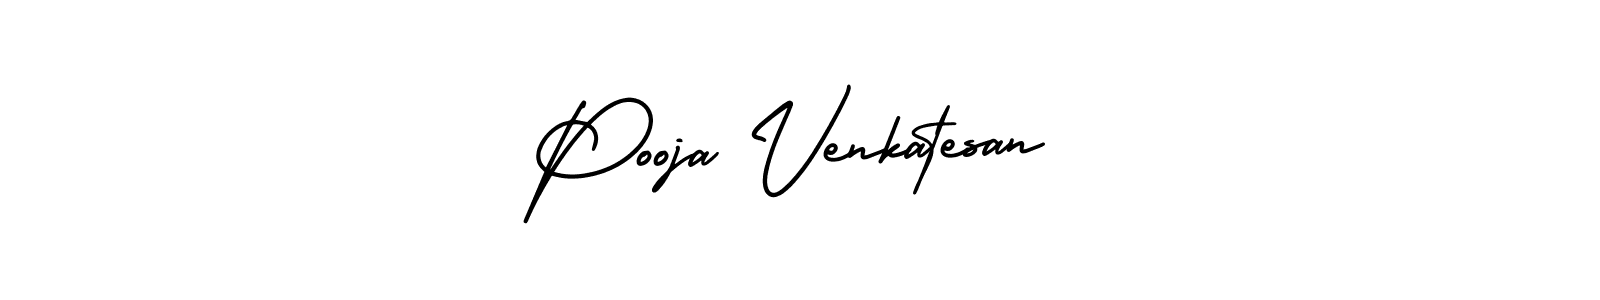 91+ Pooja Venkatesan Name Signature Style Ideas | Outstanding Name ...